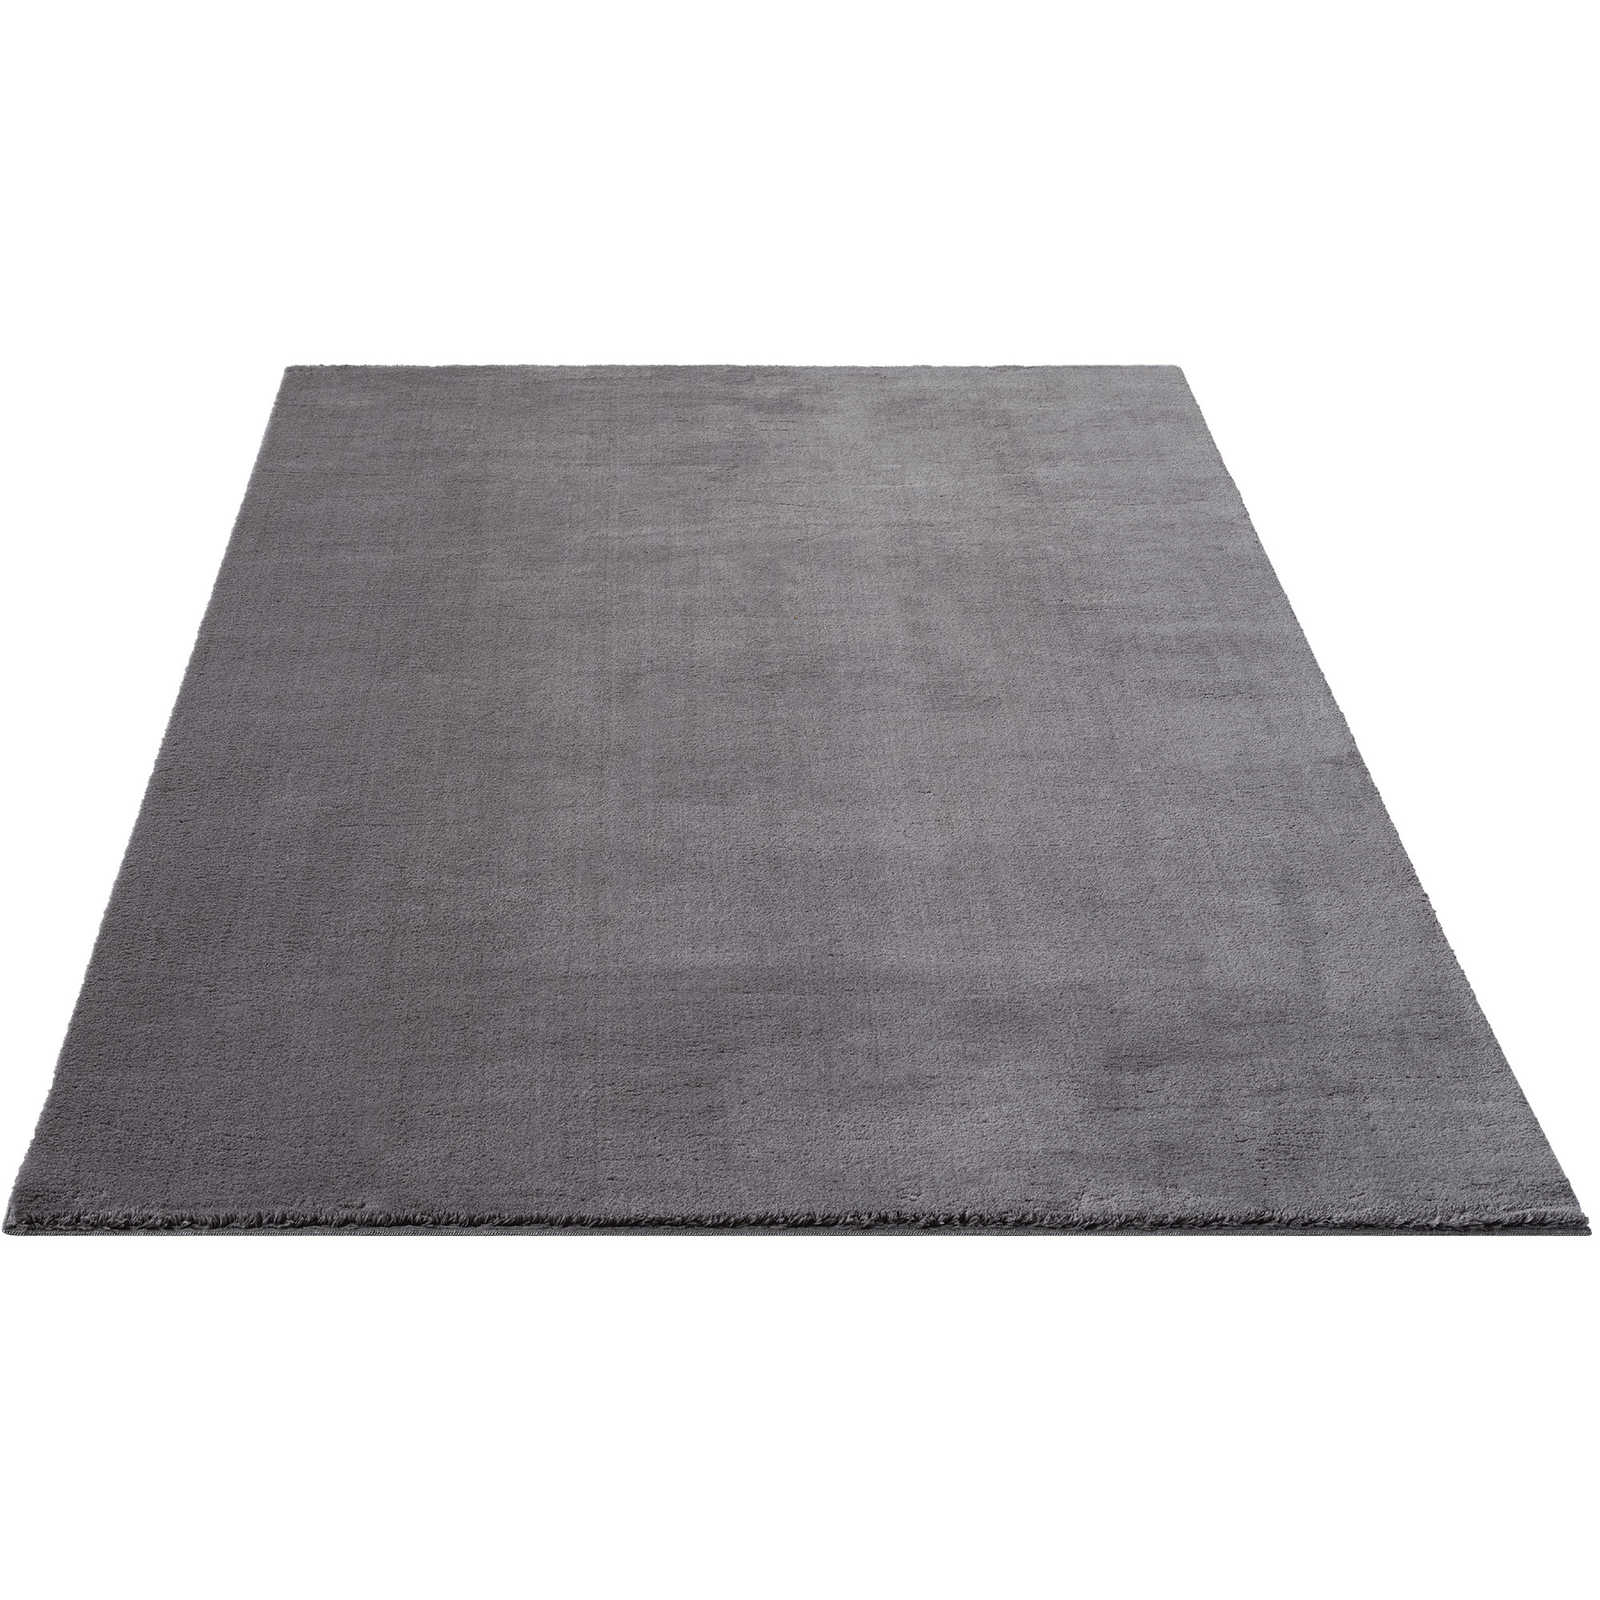 Pluizig hoogpolig tapijt in antraciet - 340 x 240 cm
